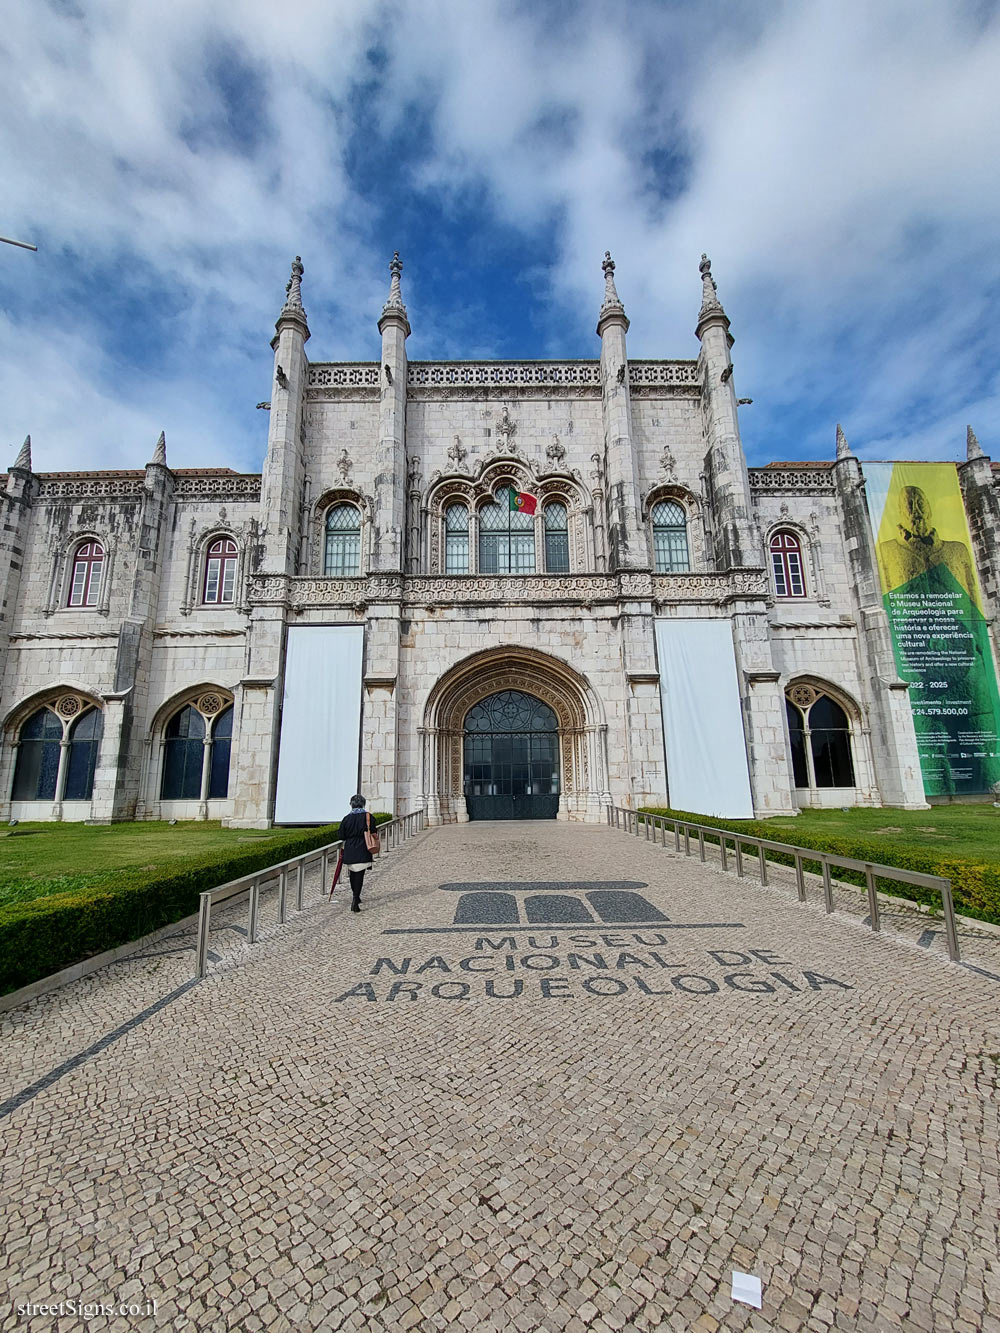 Lisbon - National Museum of Archaeology - Praça do Império 8, 1400-026 Lisboa, Portugal